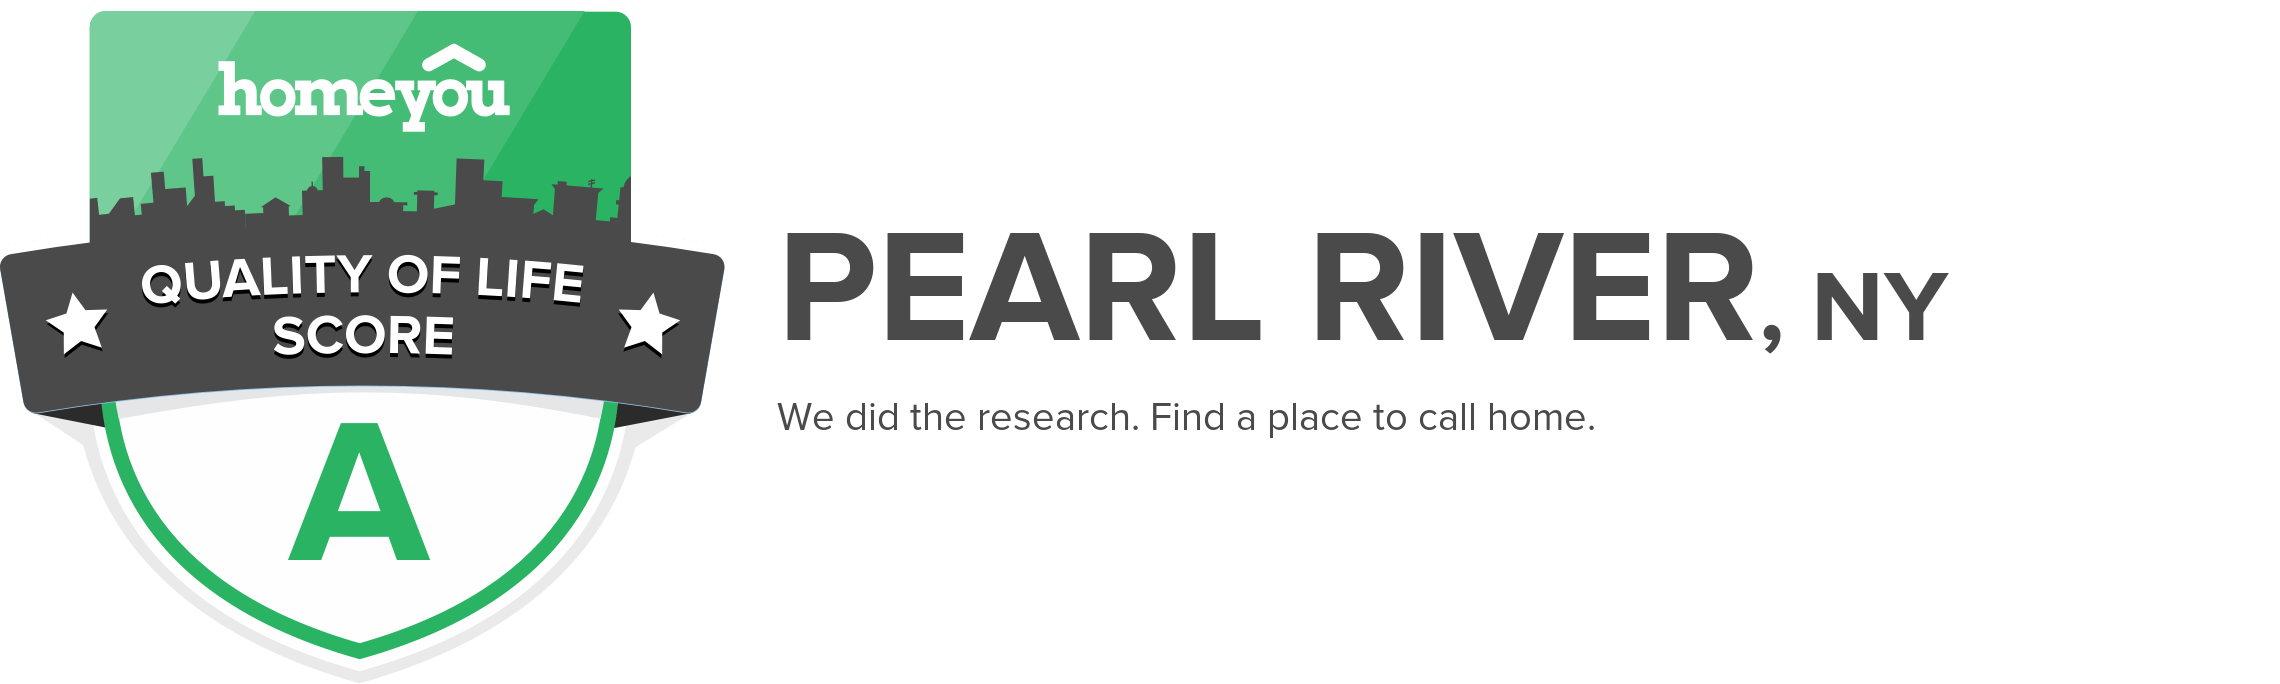 Pearl River, NY